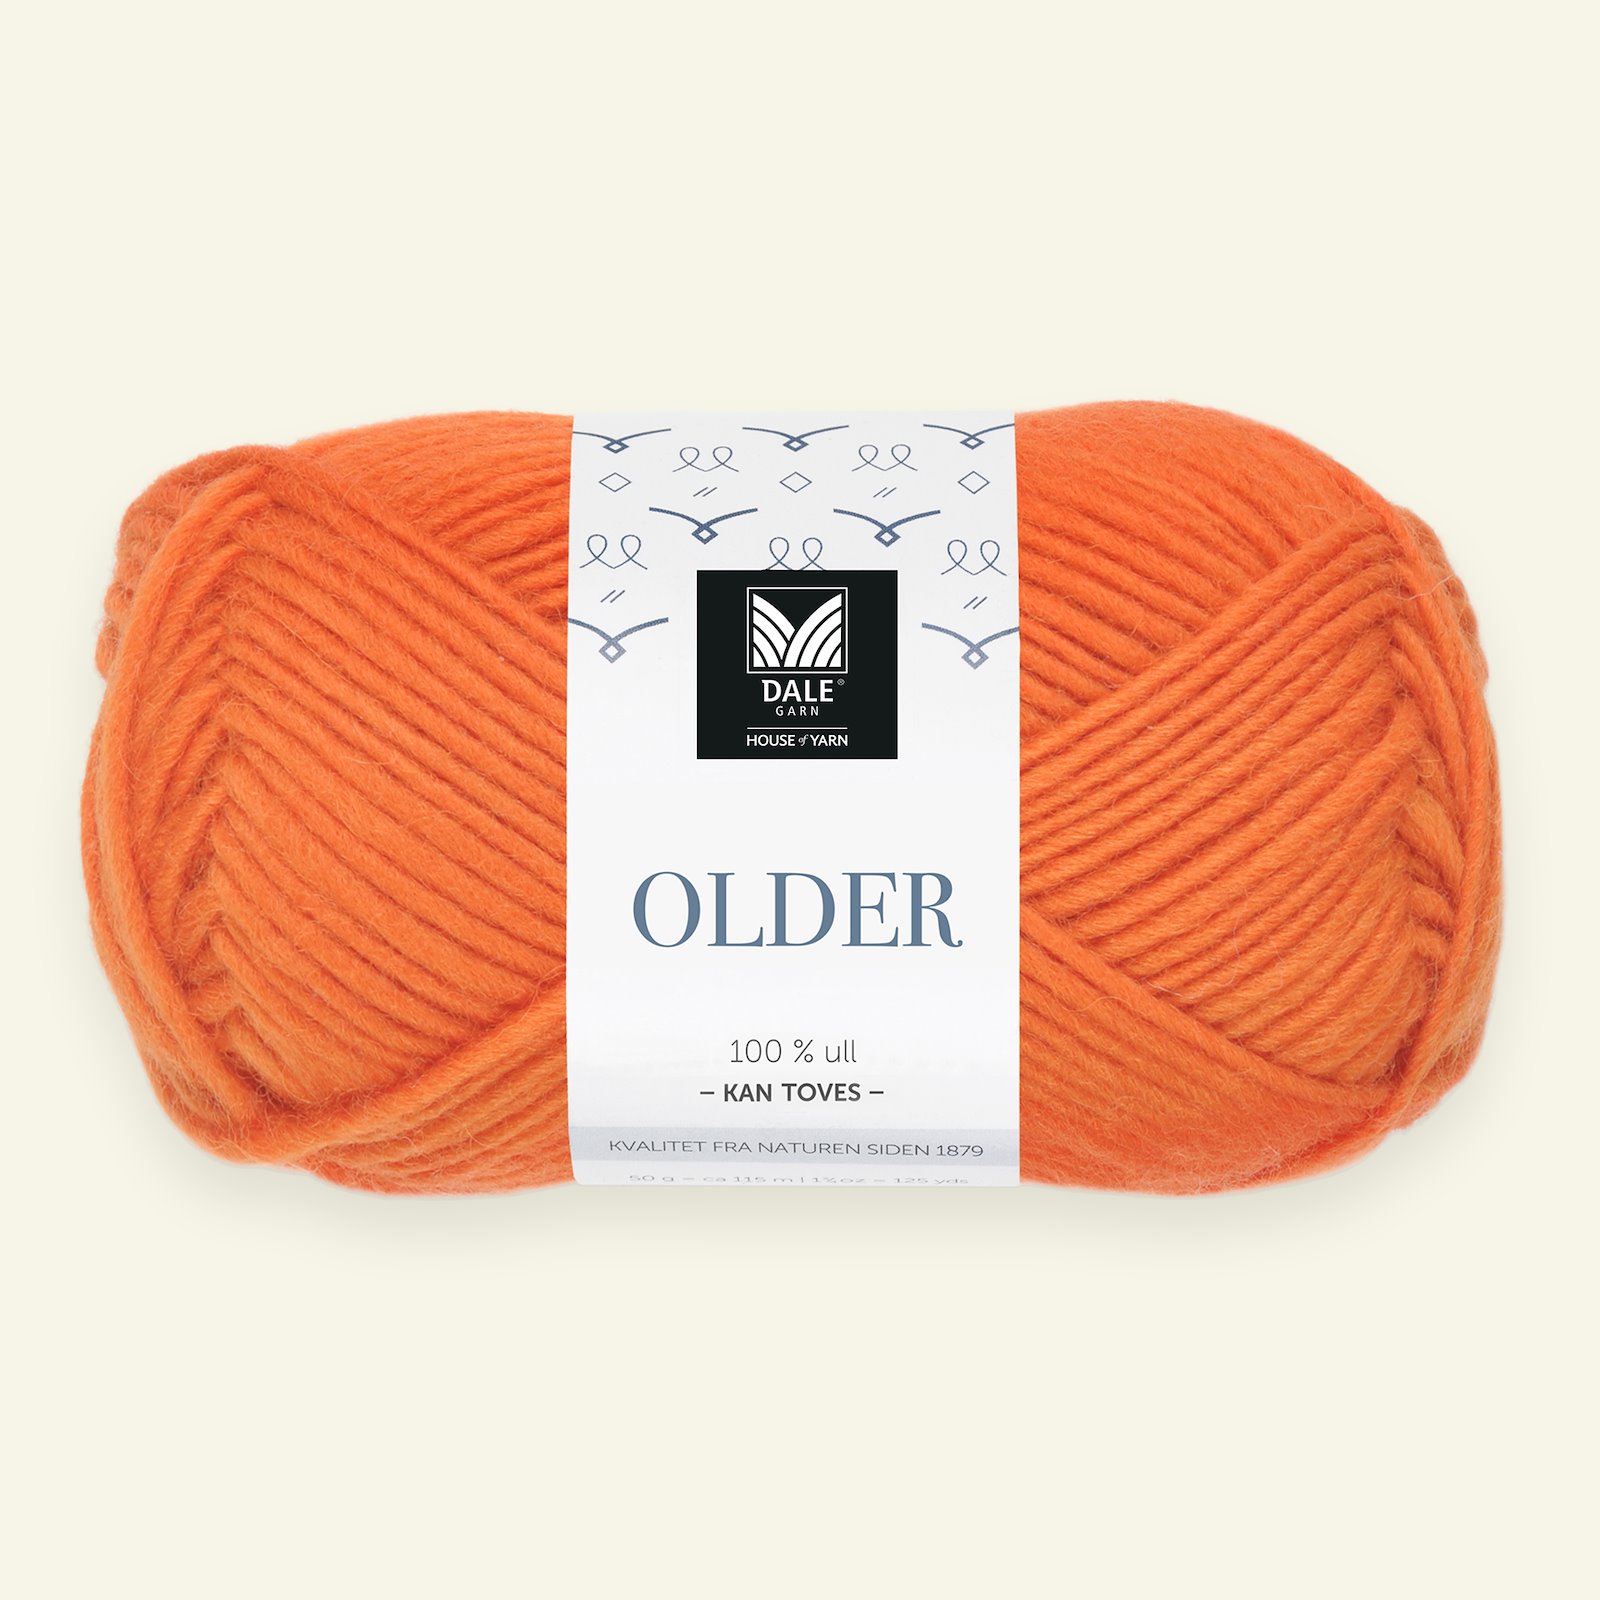 Dale Garn, 100% uldgarn "Older", orange (416) 90000486_pack